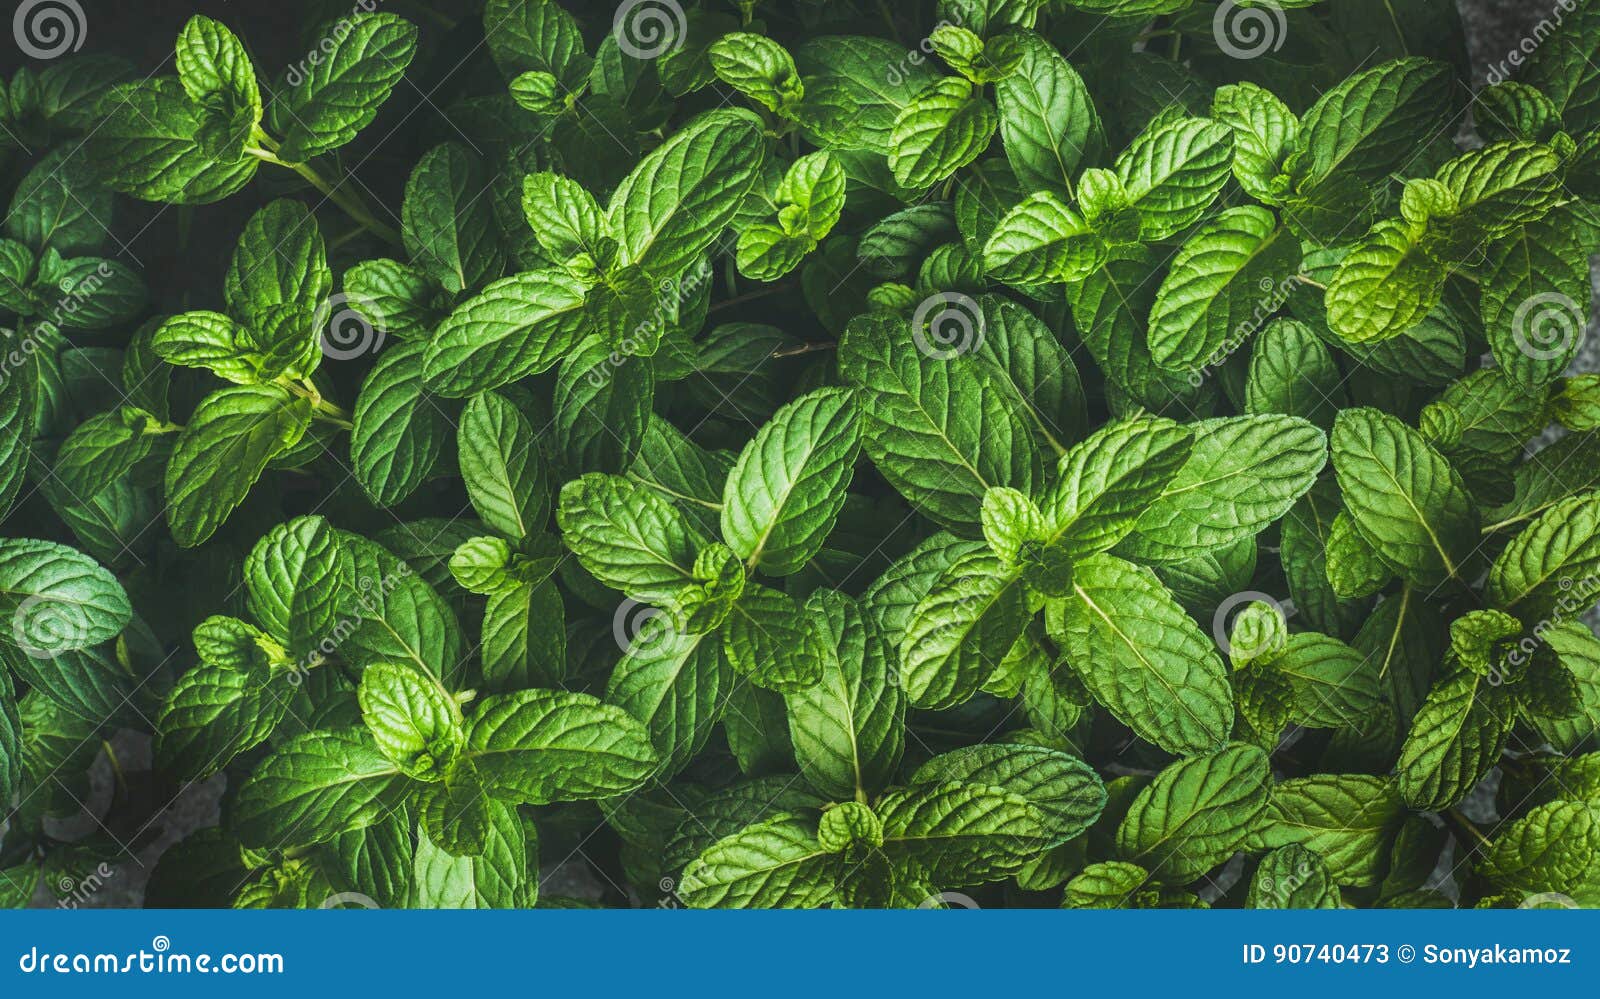 200 Mint Green Wallpapers  Wallpaperscom